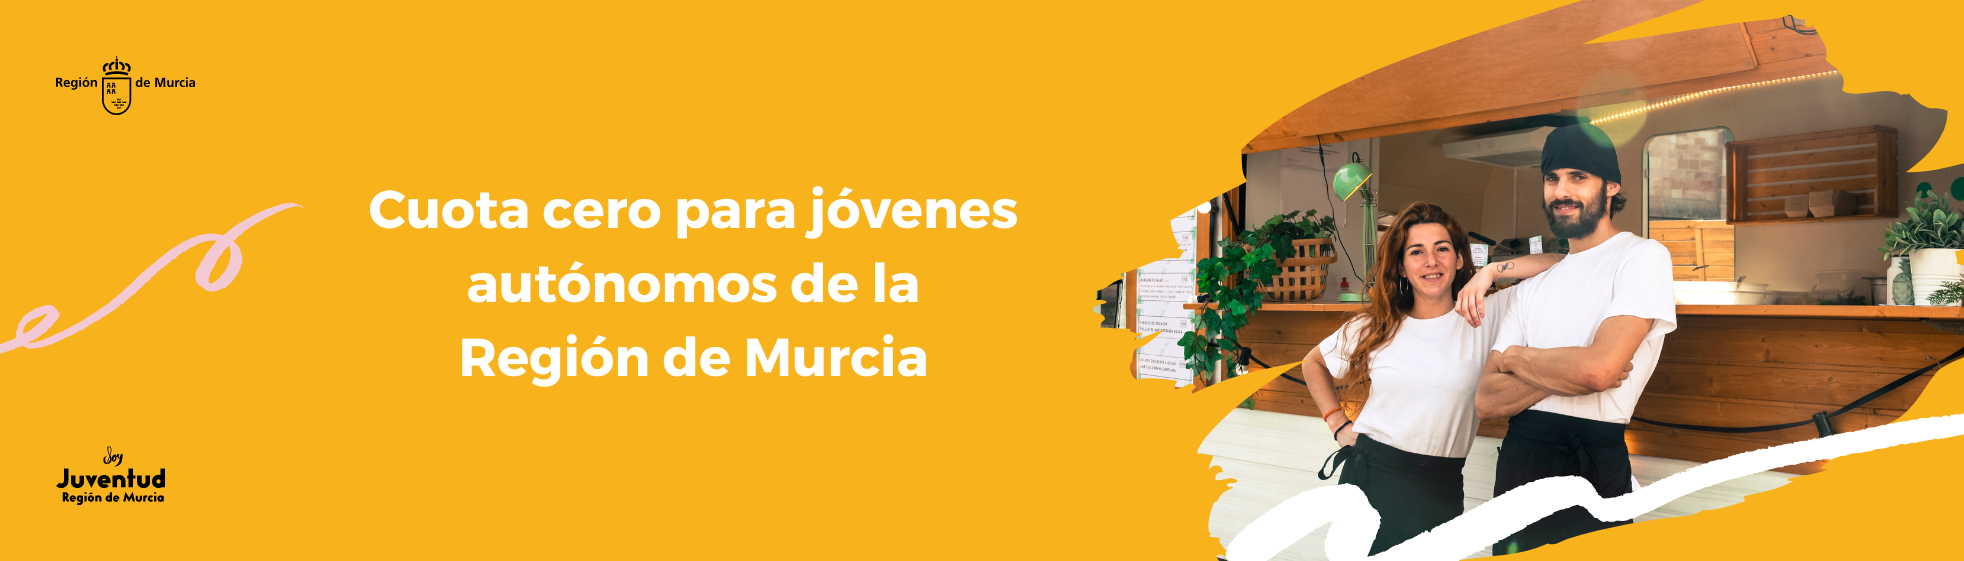 Cuota cero para jóvenes autónomos de la Región de Murcia